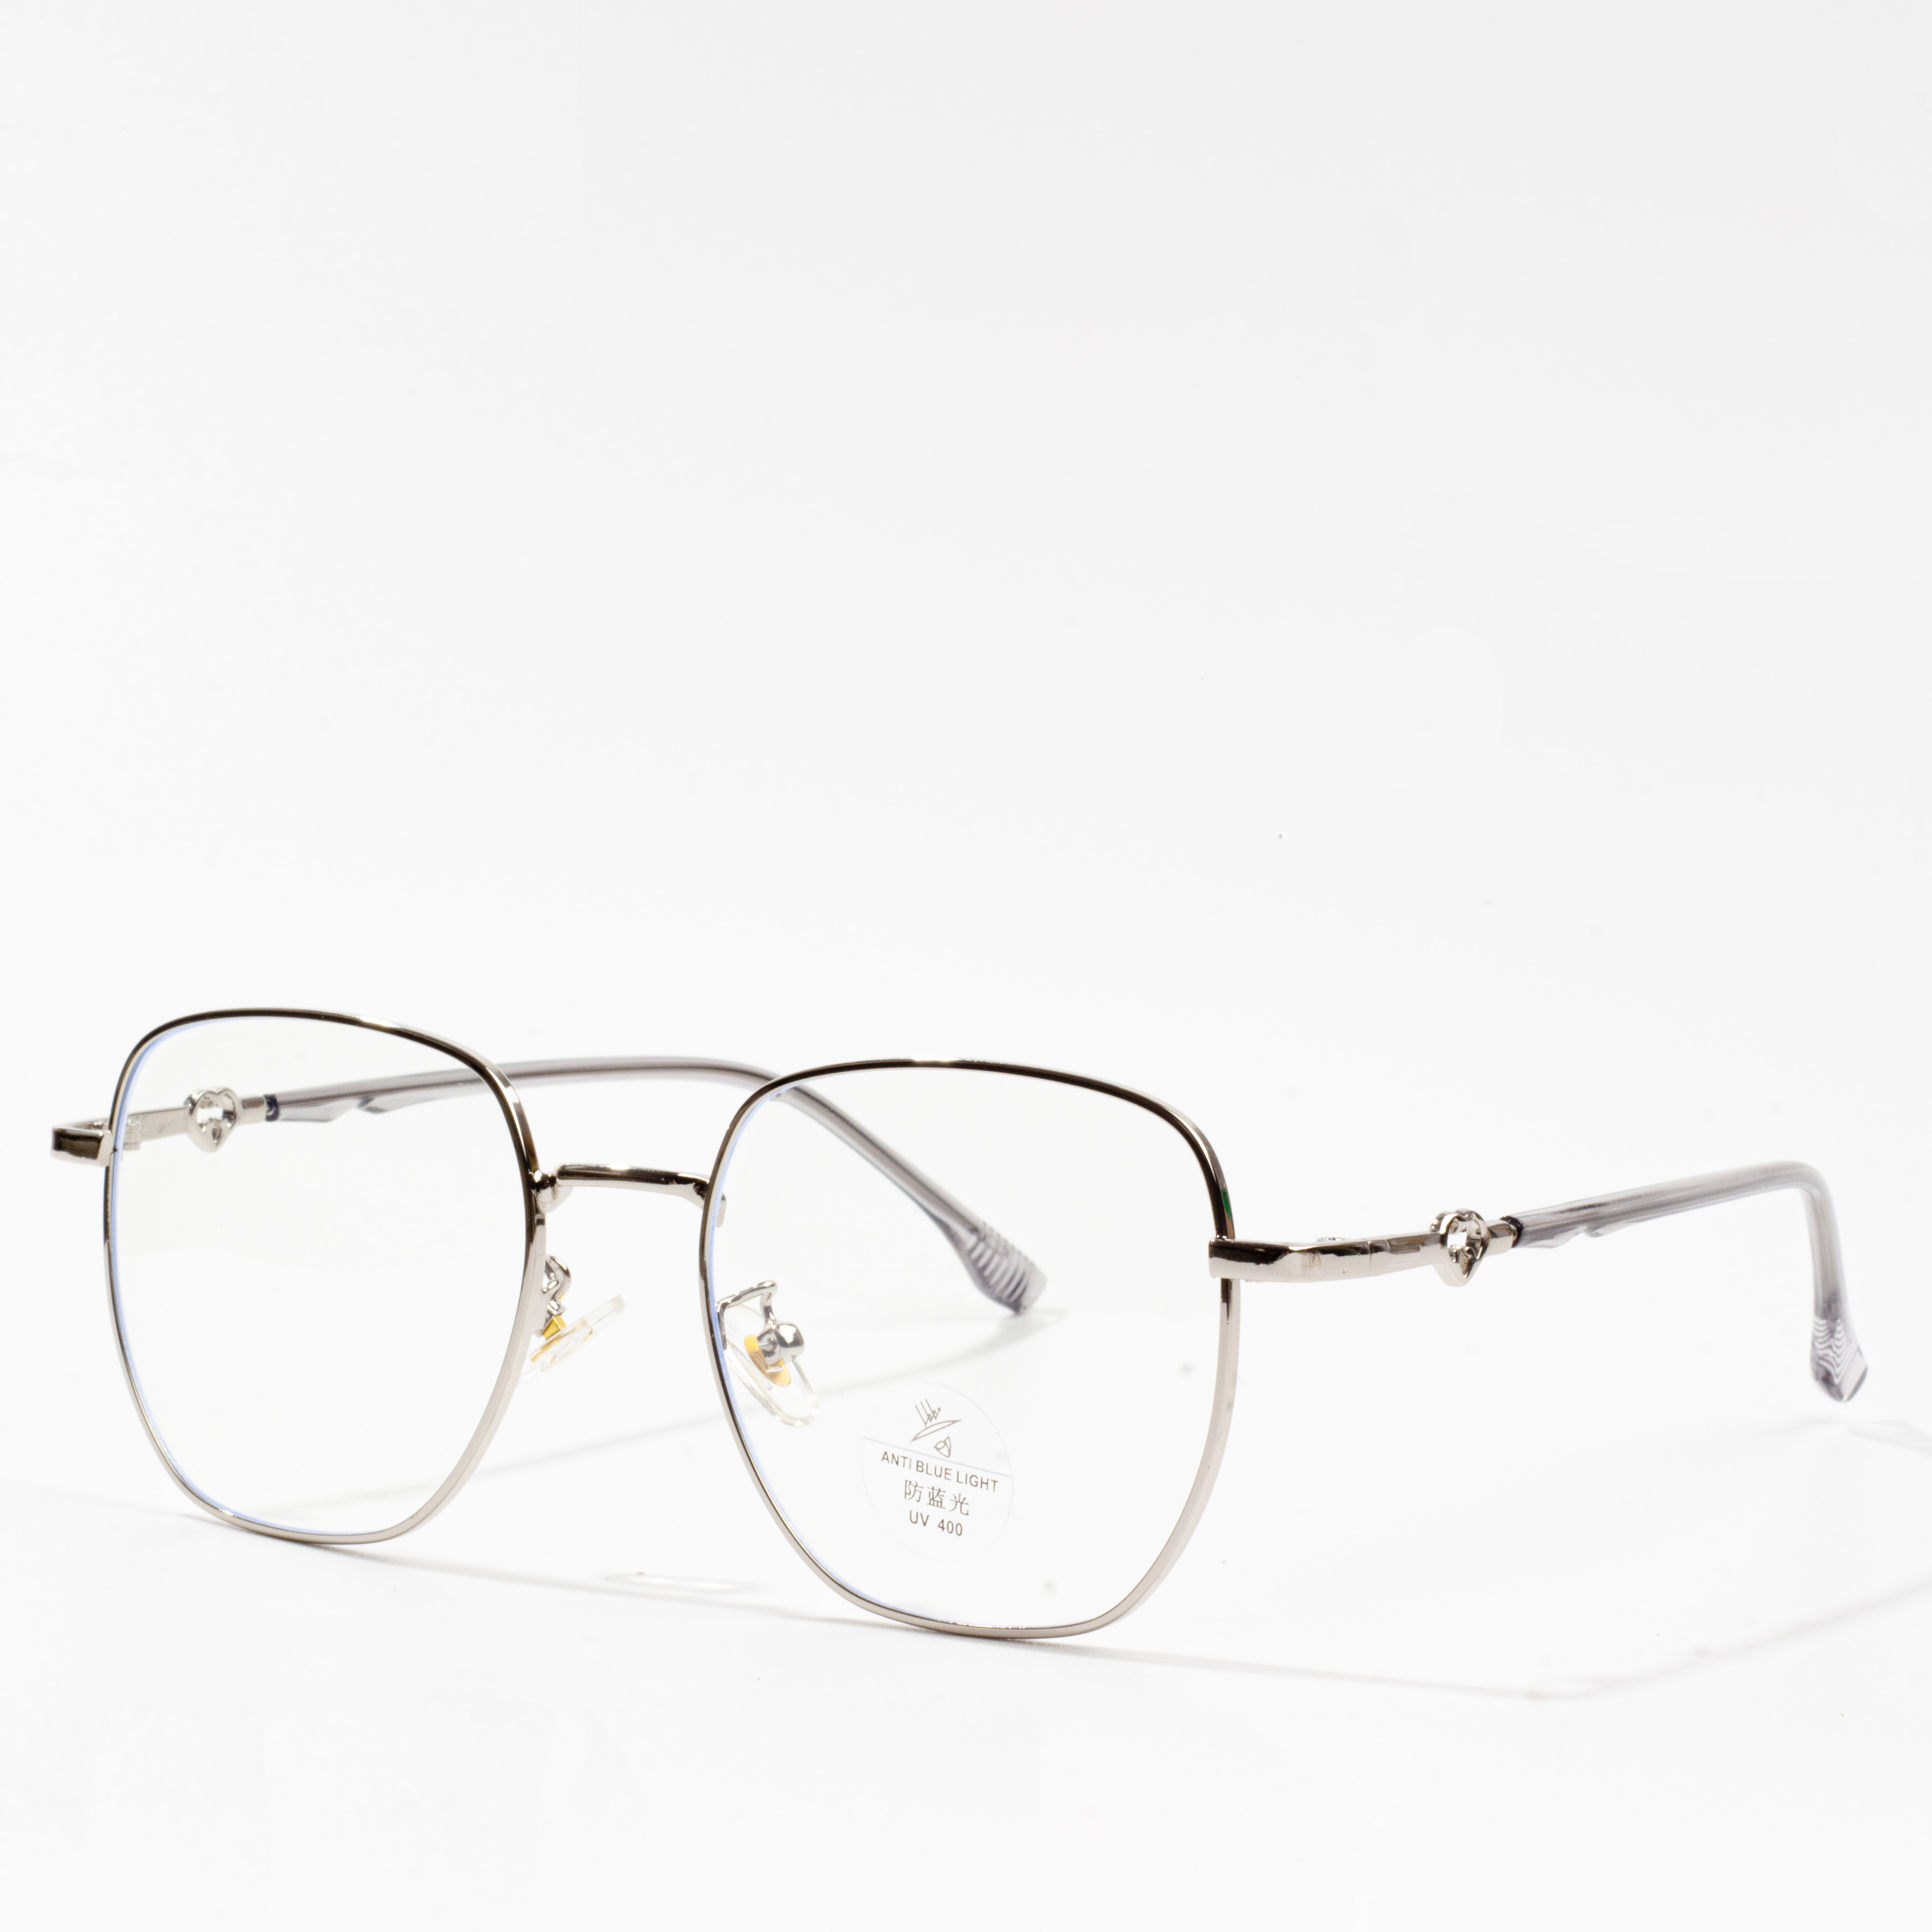 cornici metalliche per occhiali